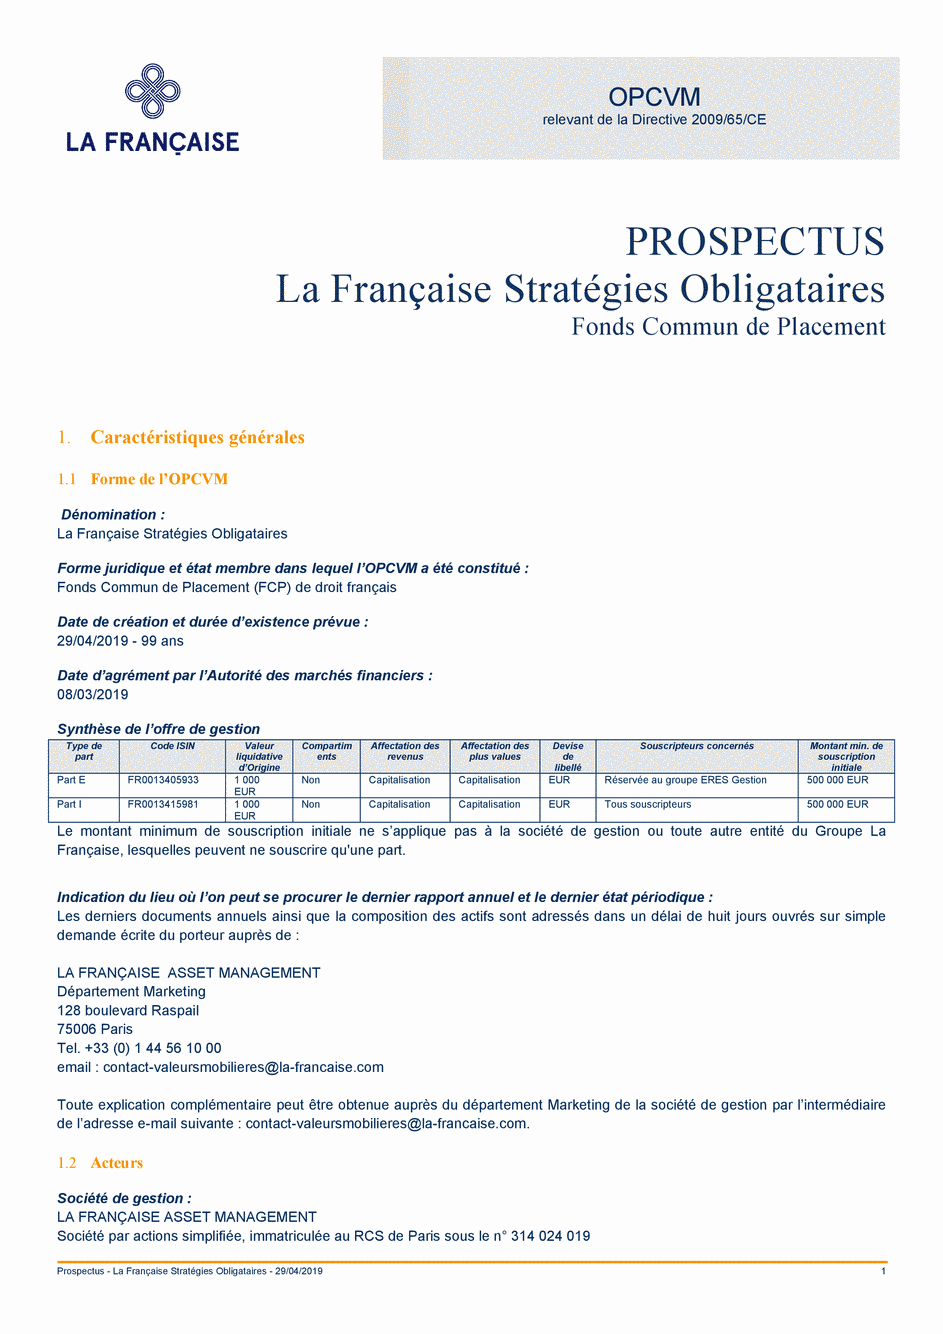 Prospectus La Française Stratégies Obligataires - Part I - 29/04/2019 - Français